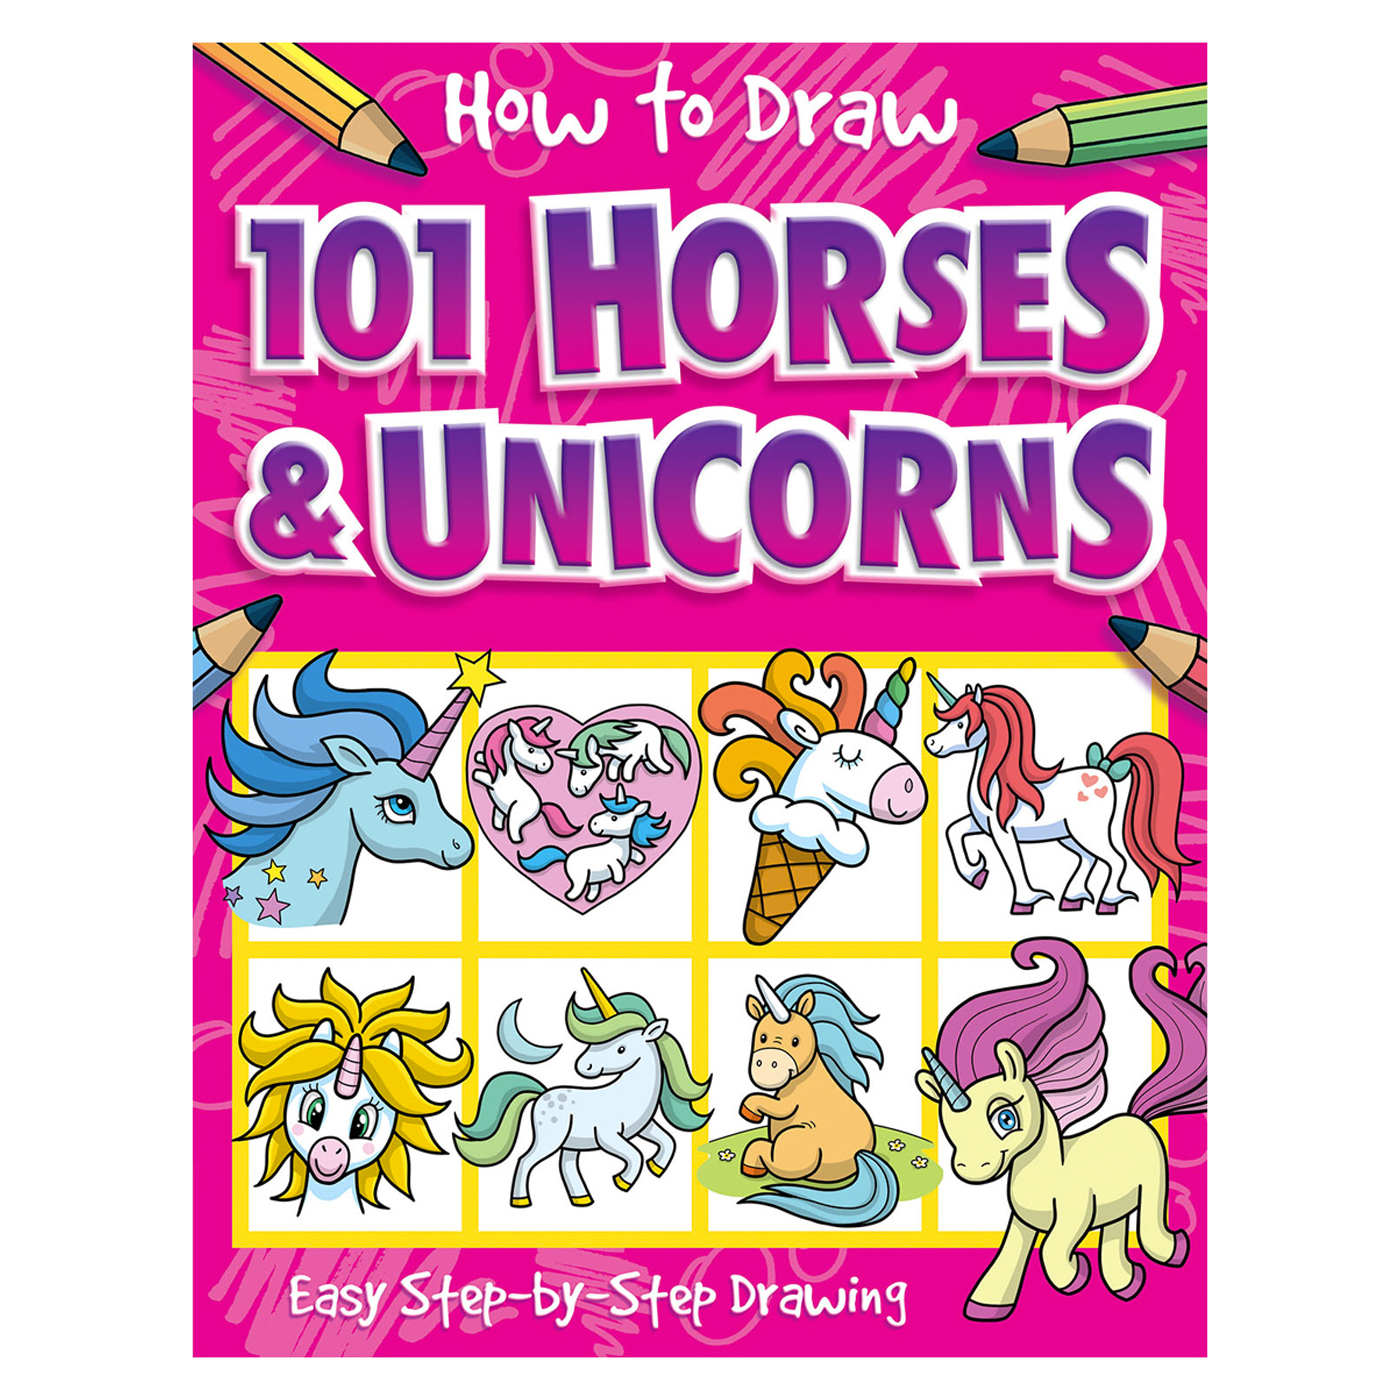  How To Draw 101 Horses & Unicorn